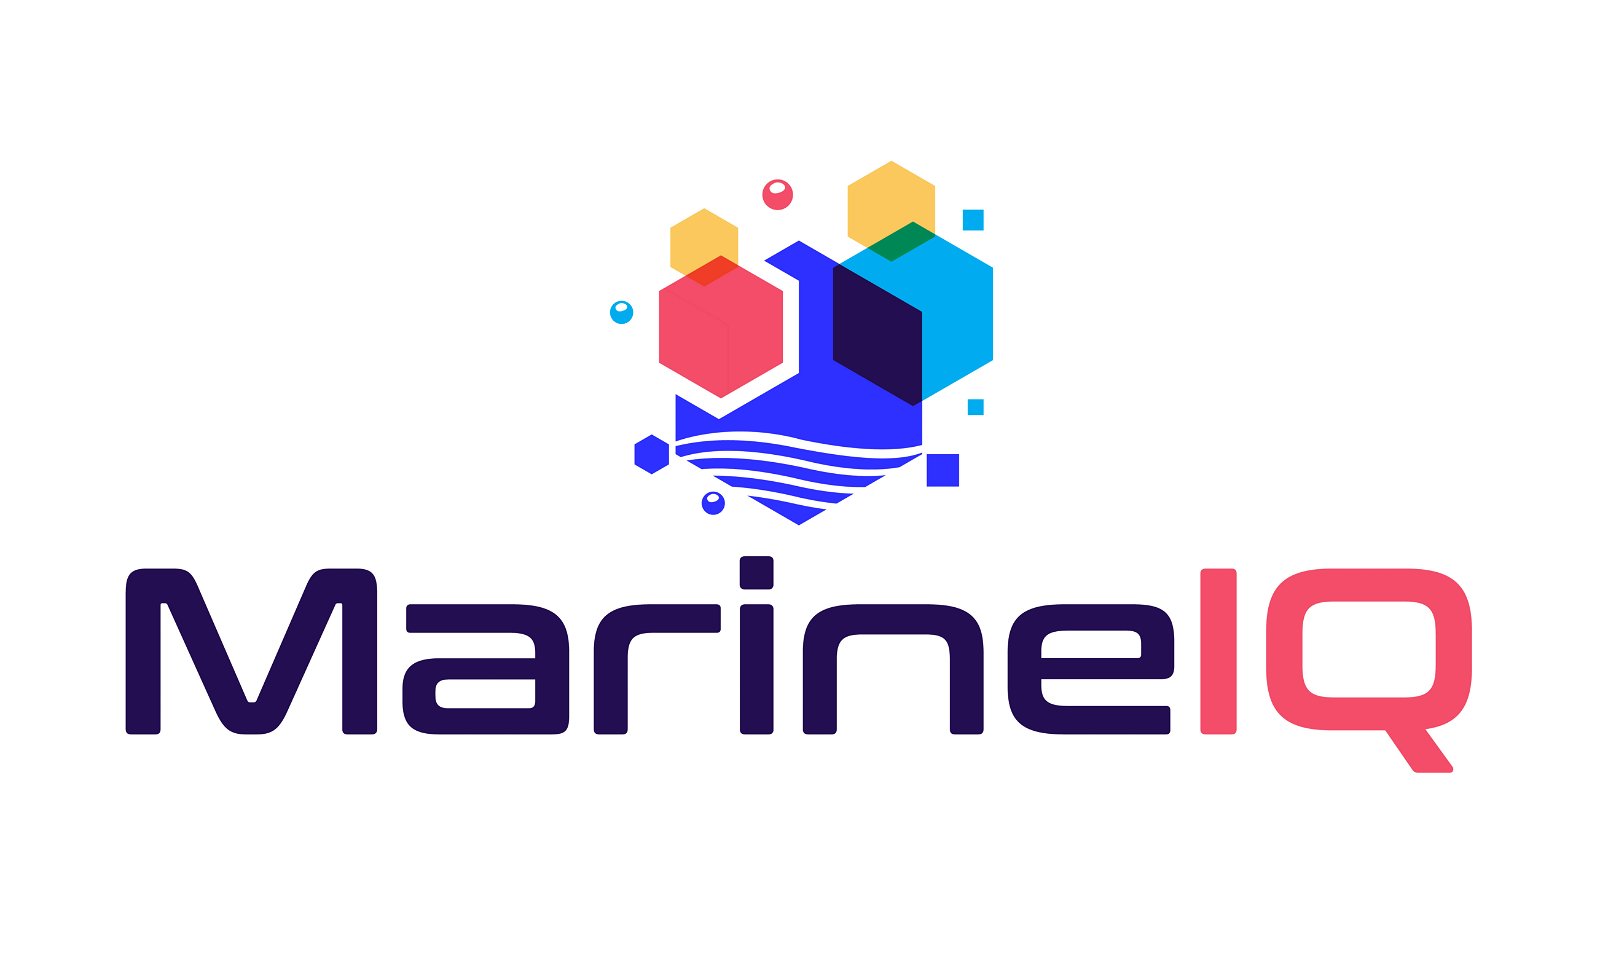 MarineIQ.com - Creative brandable domain for sale